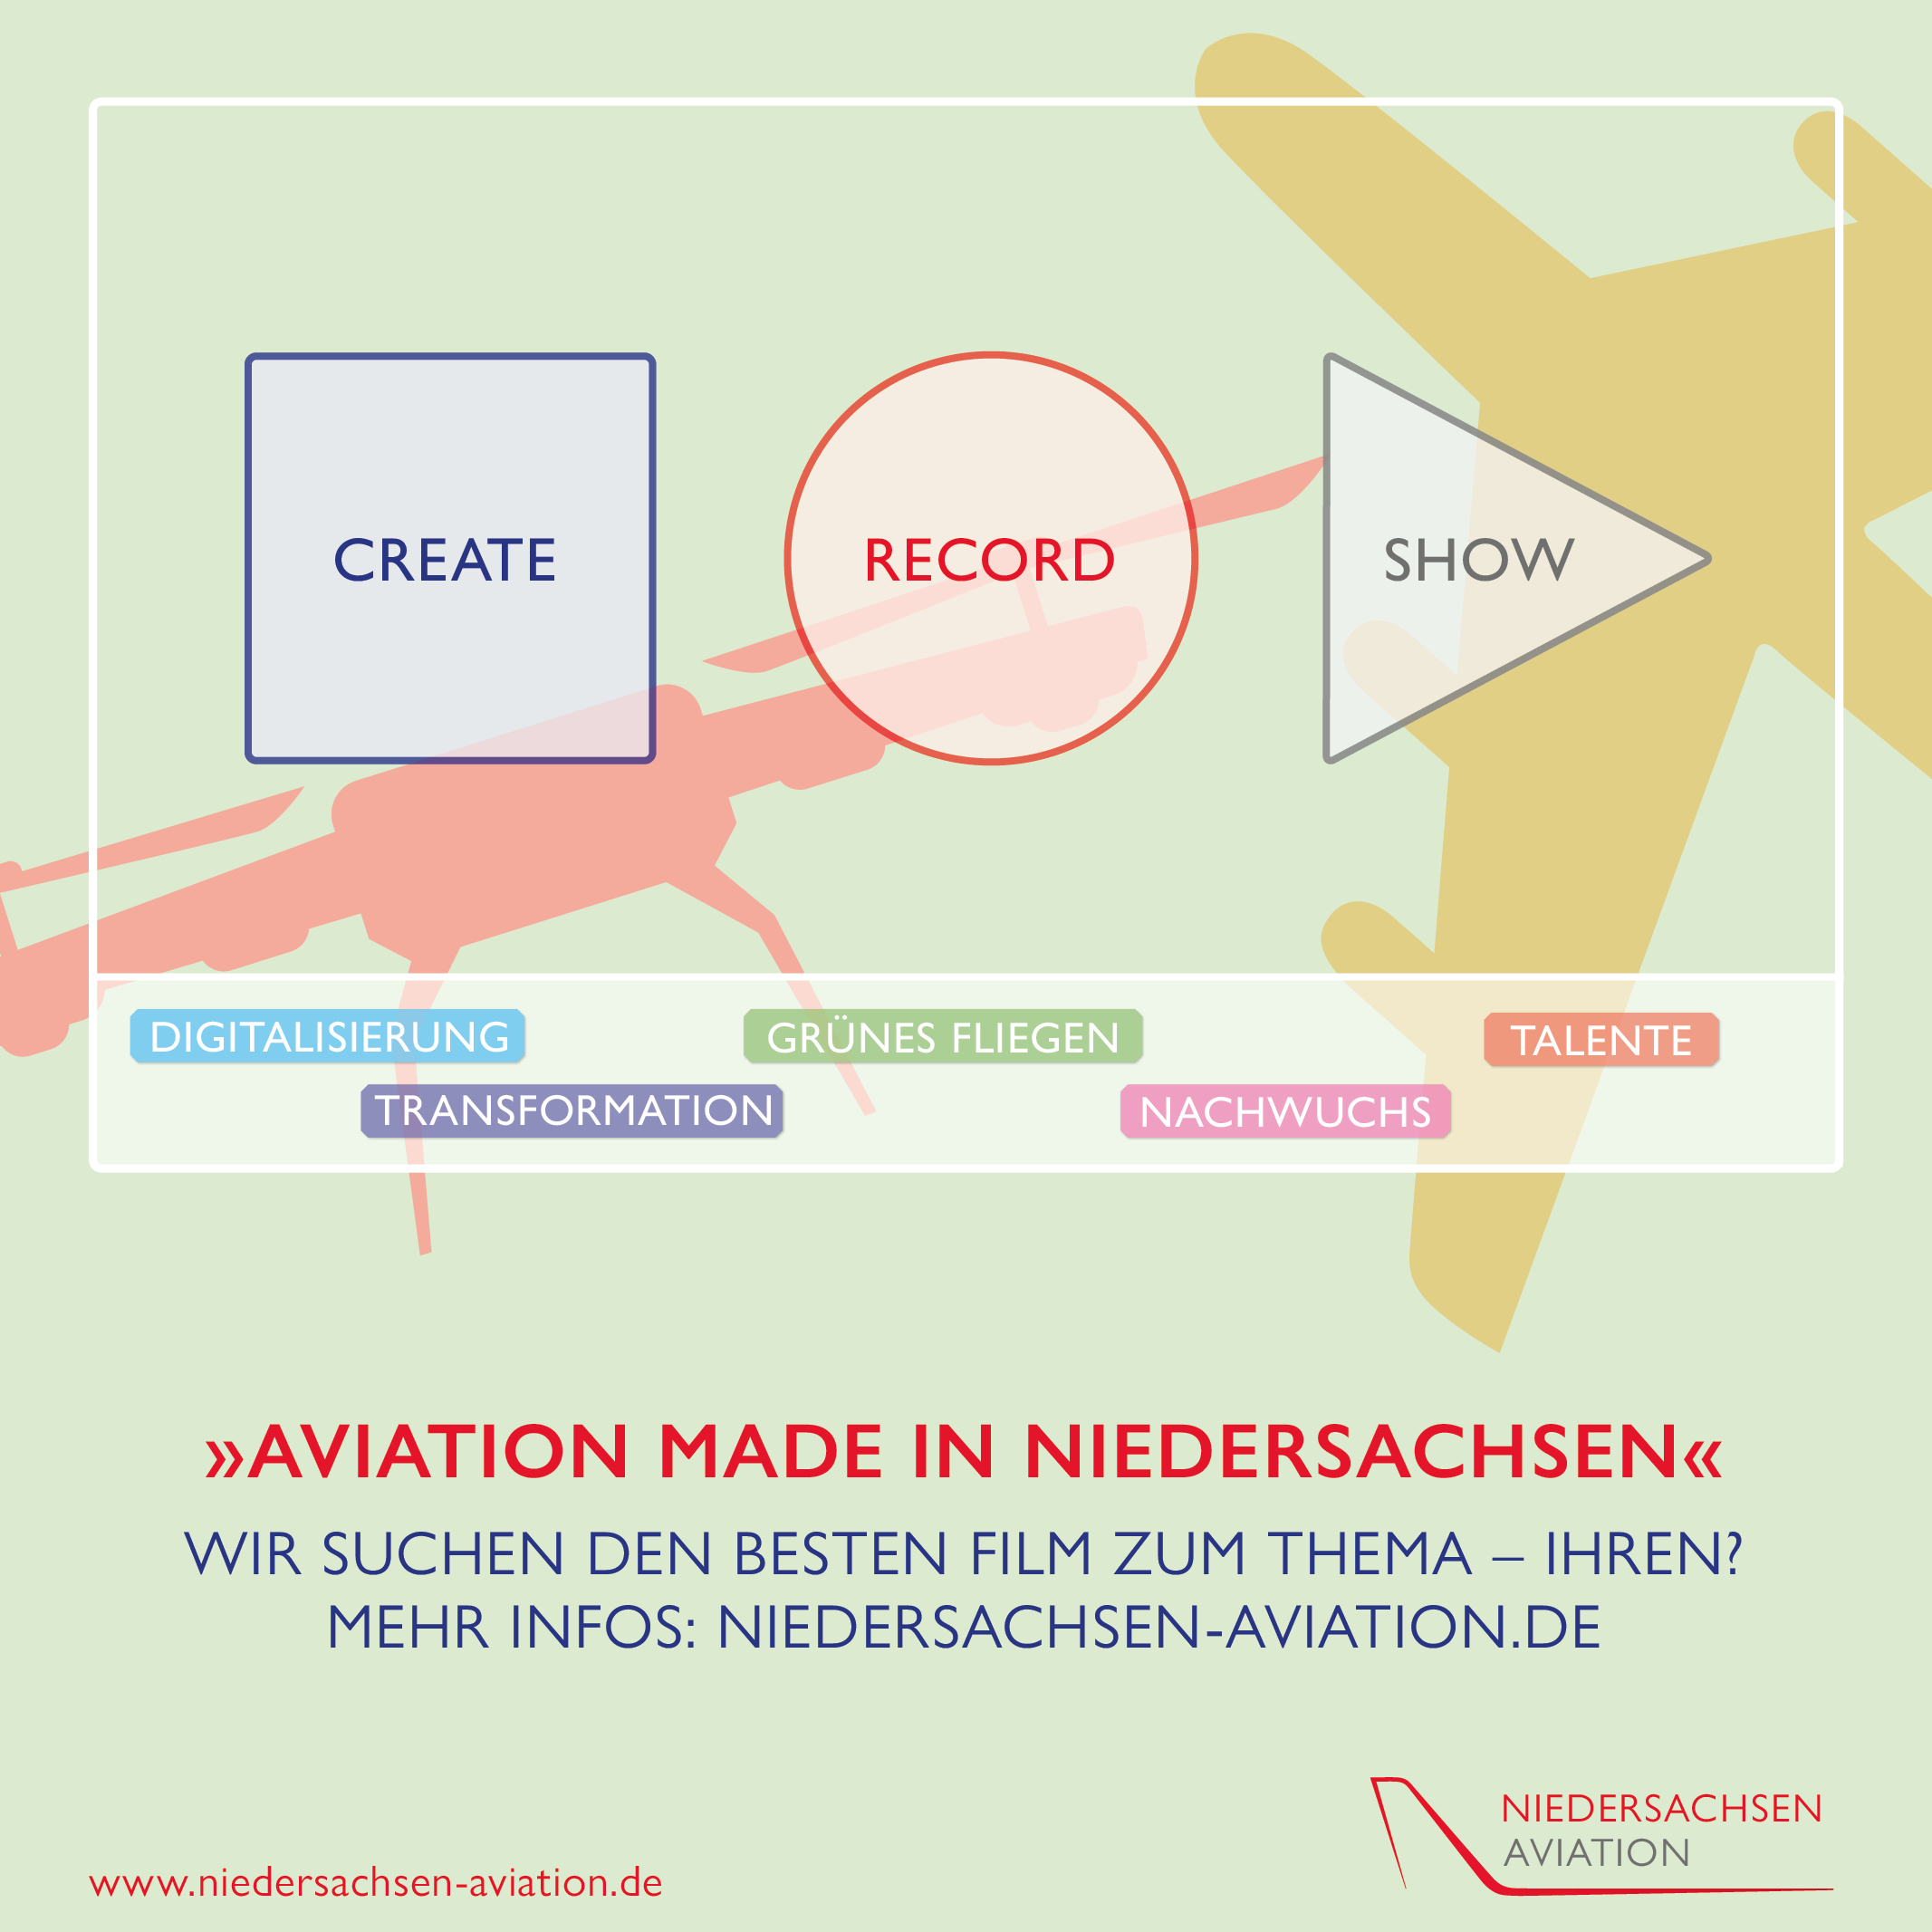 Videowettbewerb „Aviation made in Niedersachsen“ – Jetzt teilnehmen!